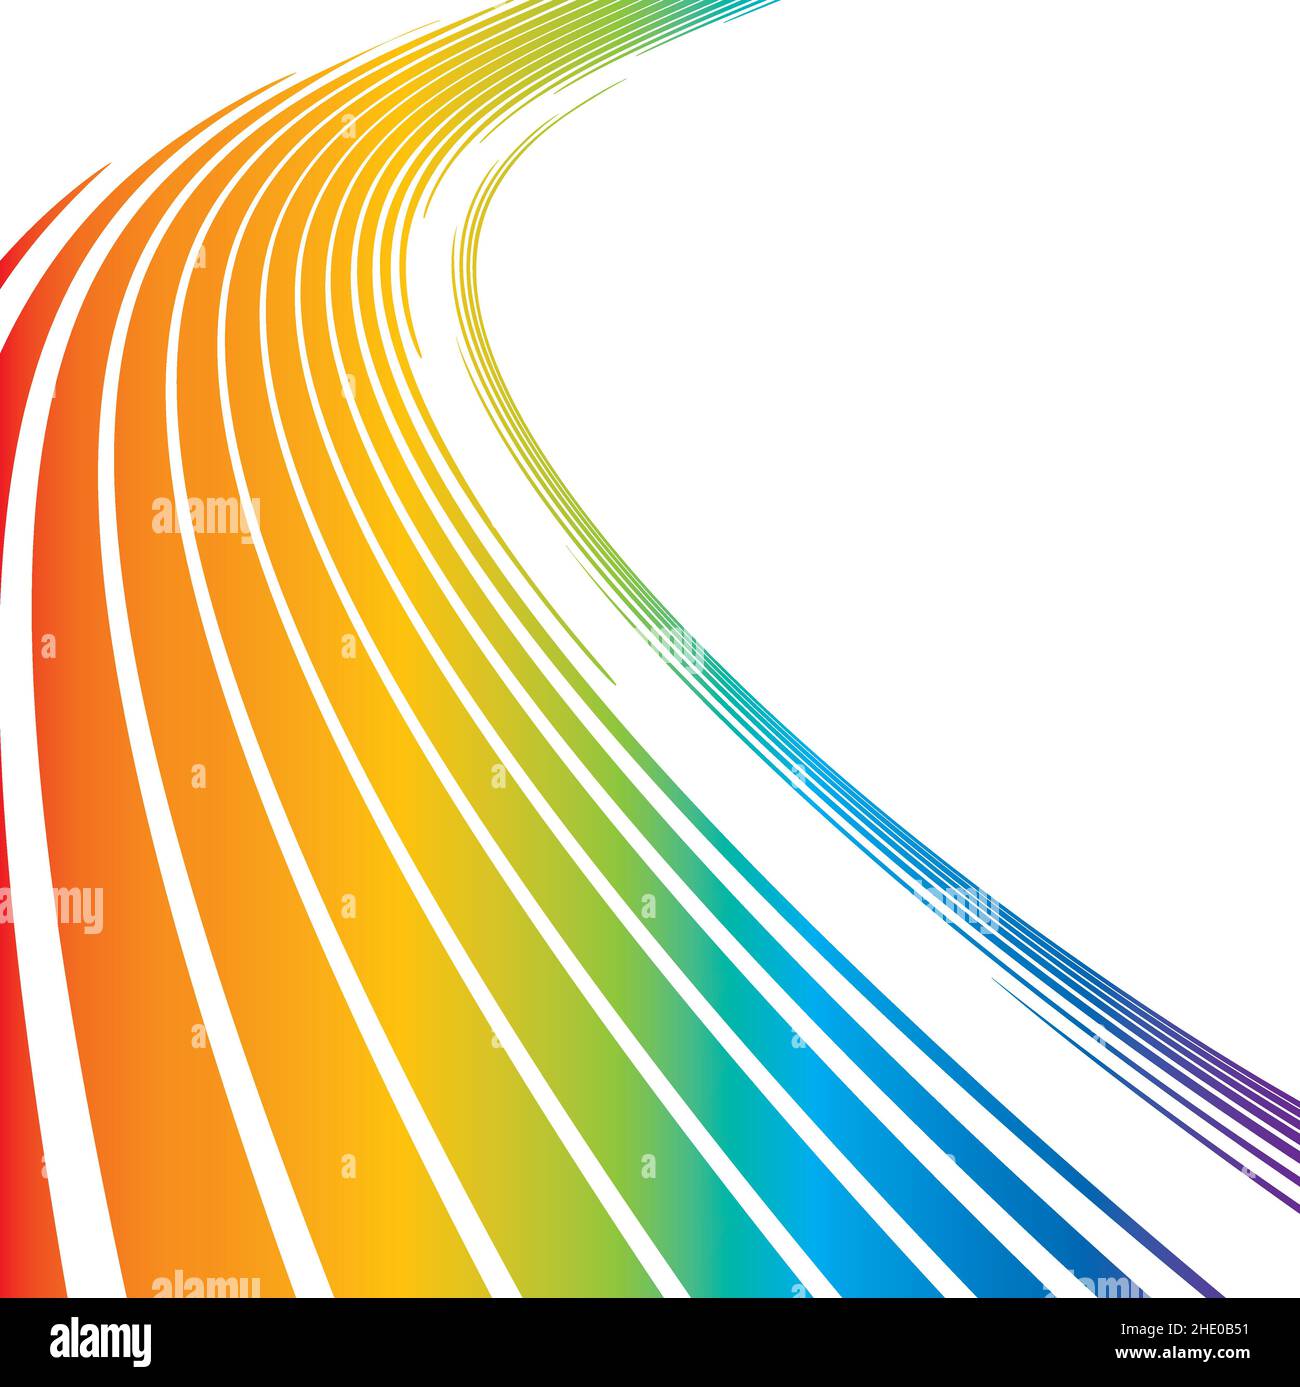 Abstract tecnología de arco iris curvado líneas de rayas fondo geométrico cuadrado Ilustración del Vector